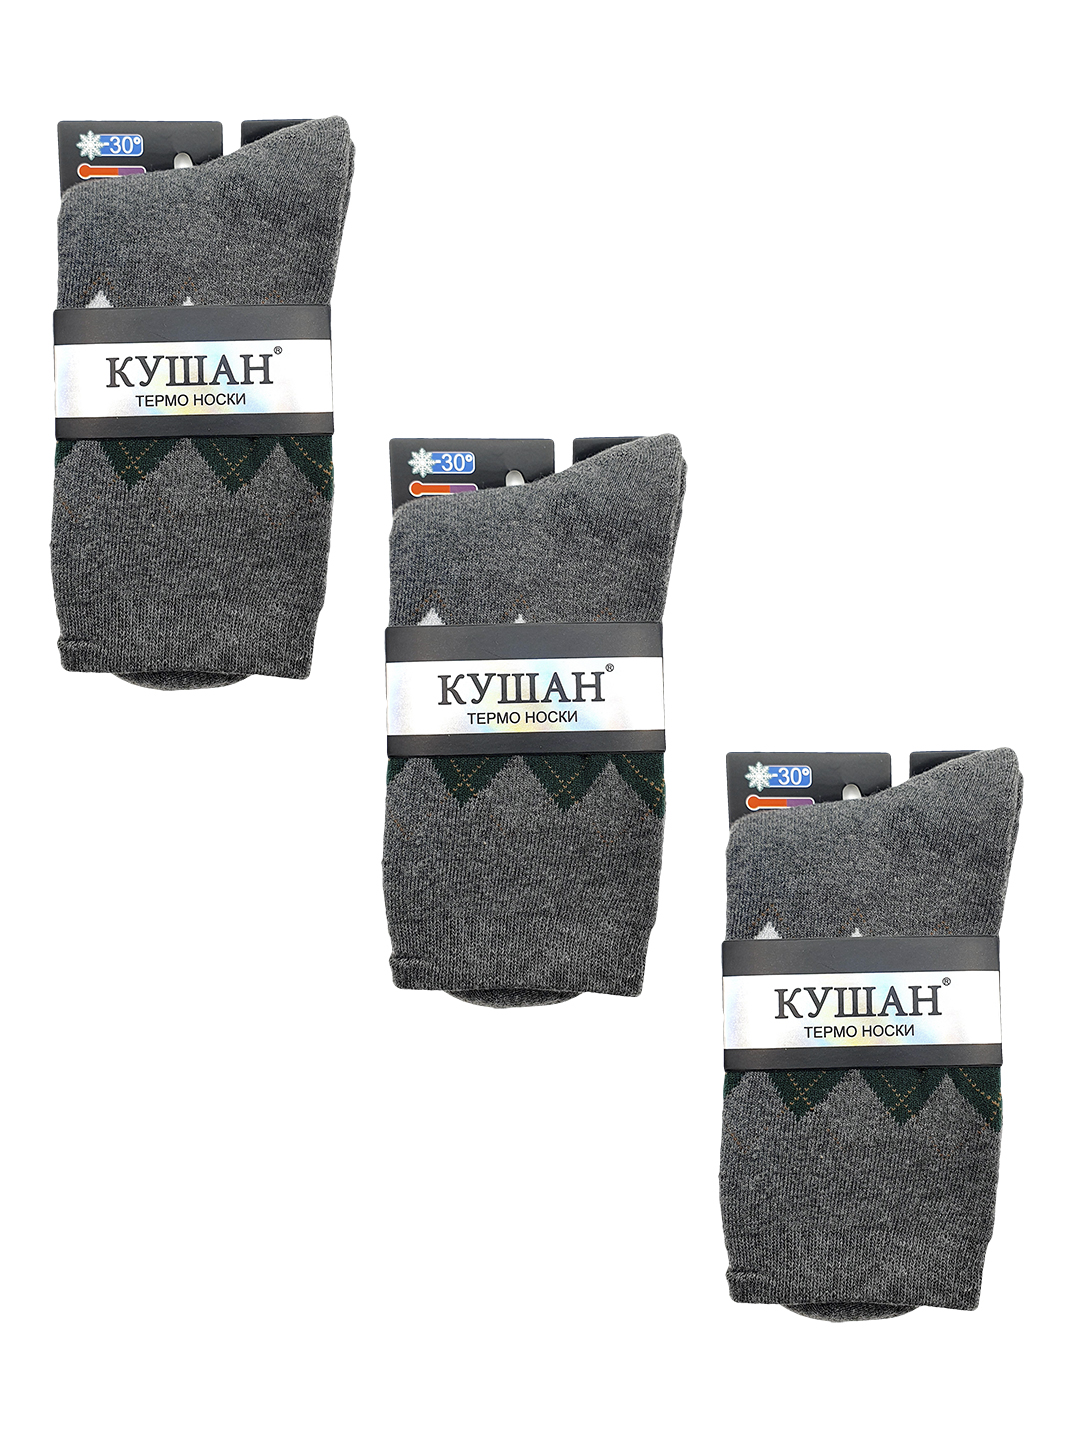 Комплект носков мужских кушан A202 серых 41-45